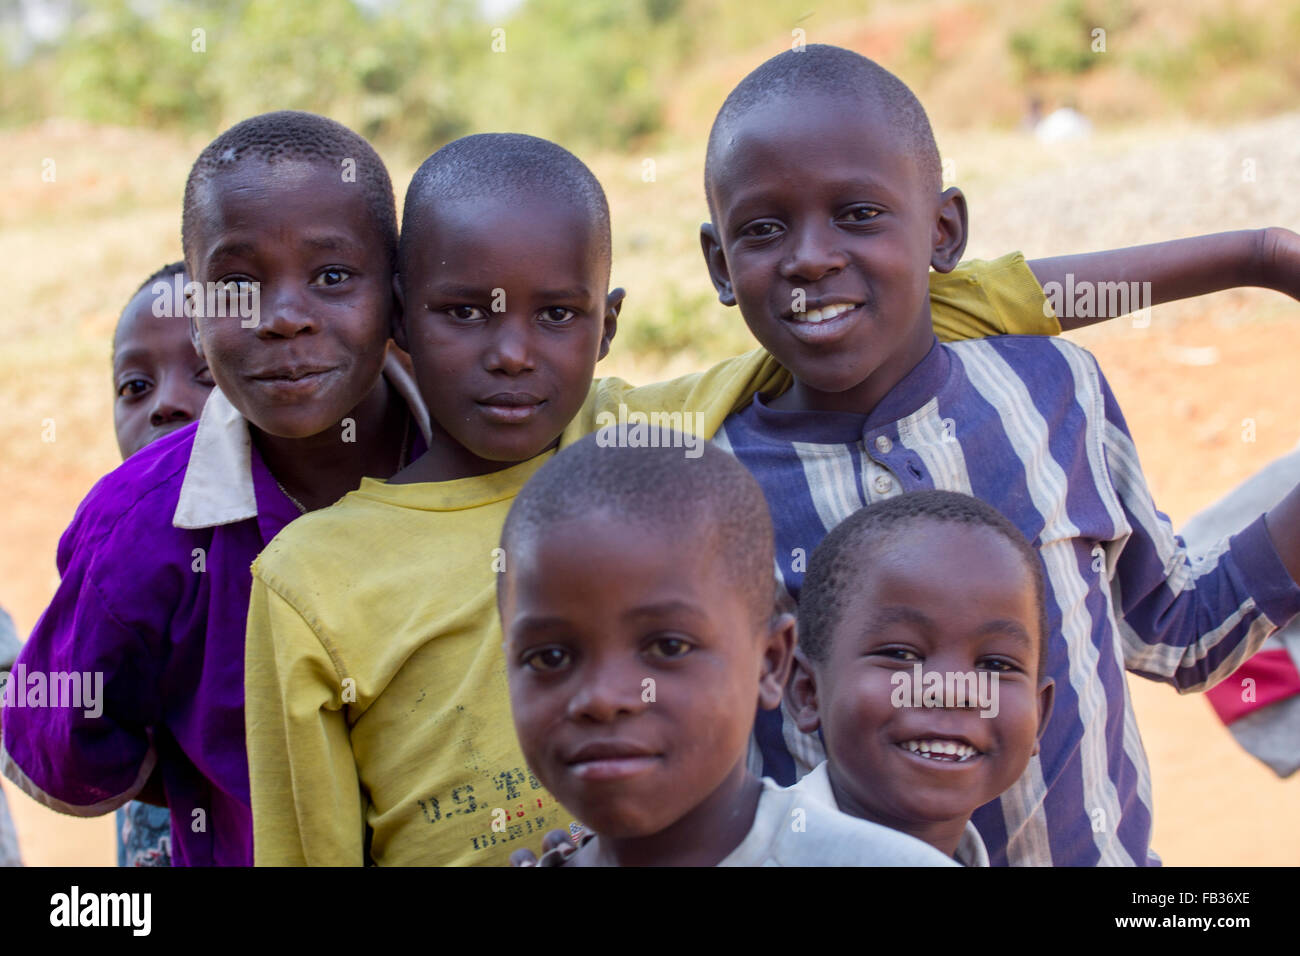 Mbale en Ouganda - 28 janvier 2011 : les enfants de l'Est de l'Ouganda Banque D'Images